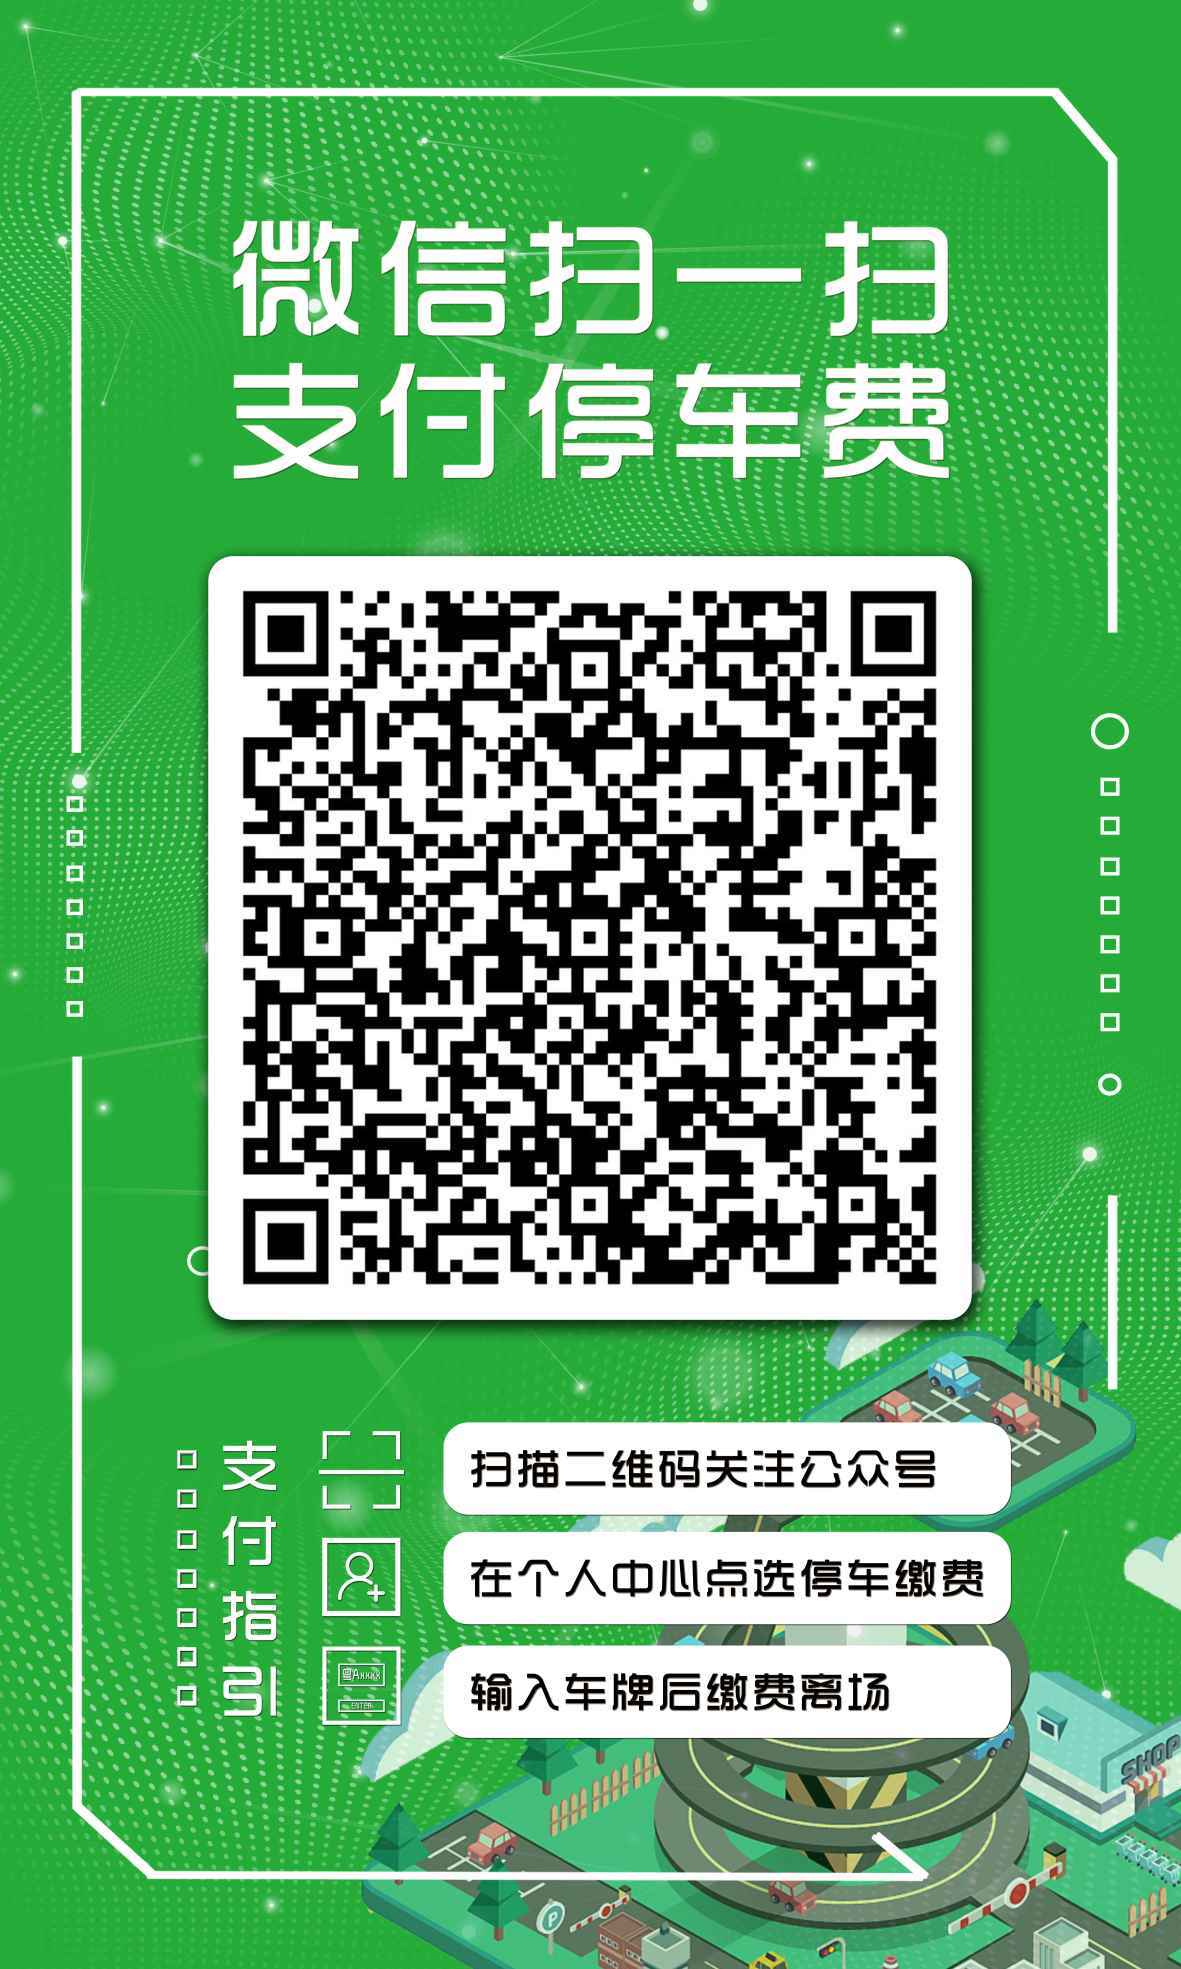 广州体育馆停车场扫码缴费项目宣传图1